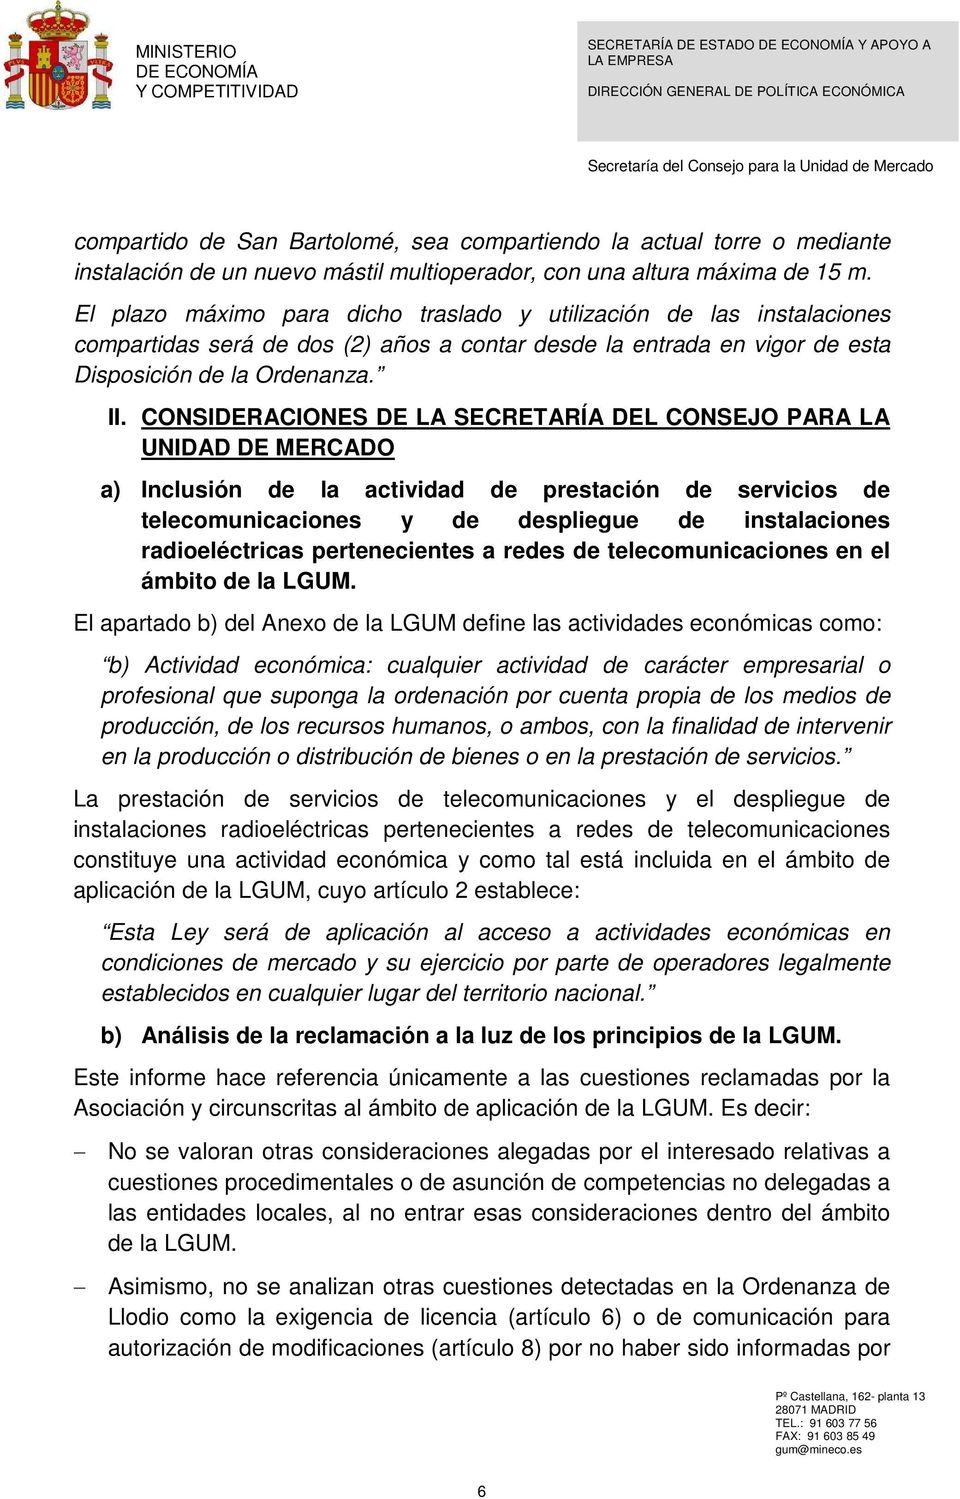 CONSIDERACIONES DE LA SECRETARÍA DEL CONSEJO PARA LA UNIDAD DE MERCADO a) Inclusión de la actividad de prestación de servicios de telecomunicaciones y de despliegue de instalaciones radioeléctricas